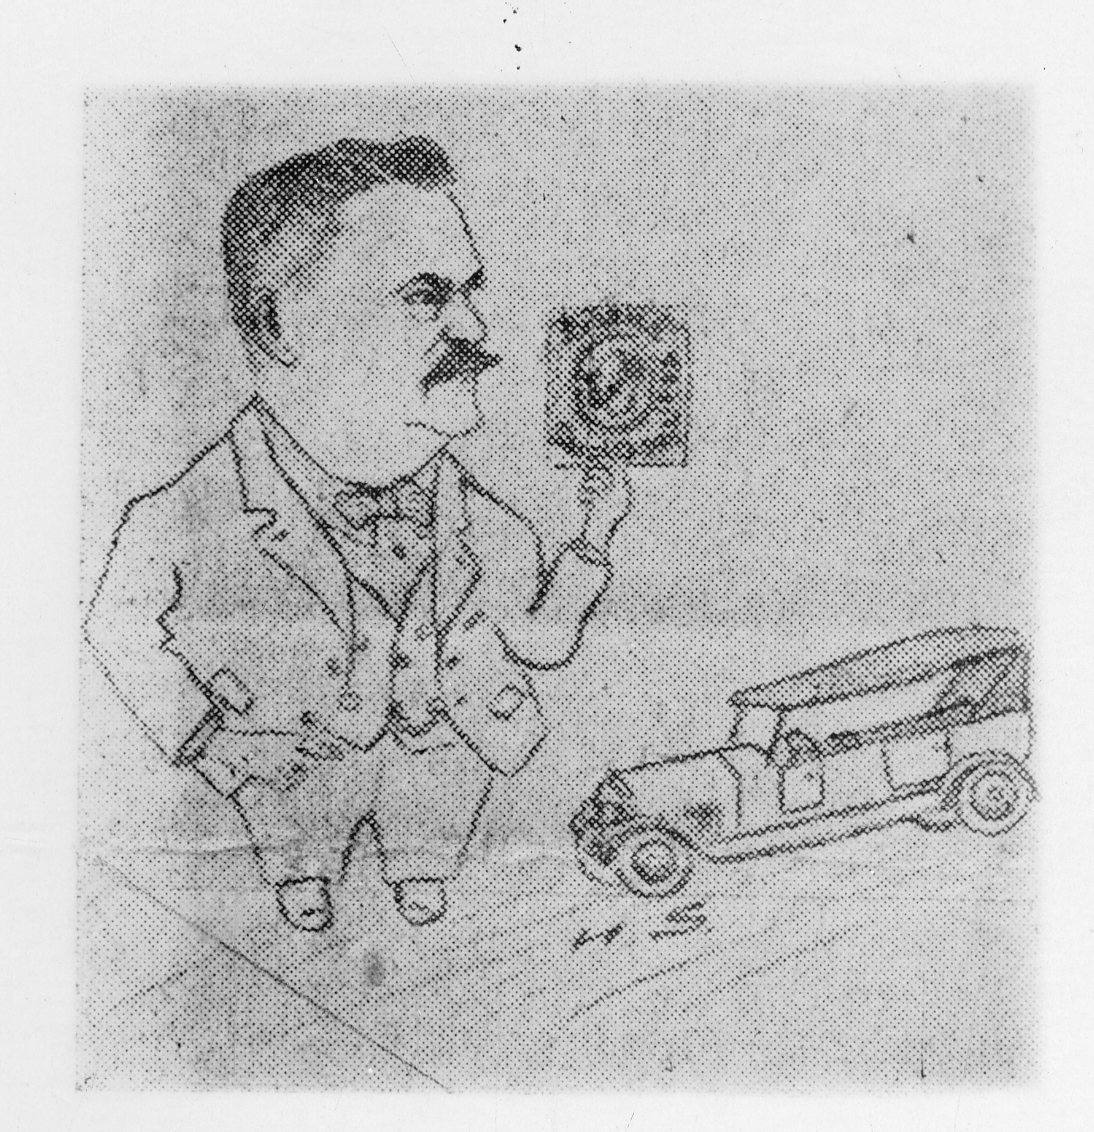 Vykort med en liten teckning i övre vänstra hörnet, en karikatyr föreställande en man intill en liten bil och med ett frimärke i handen.